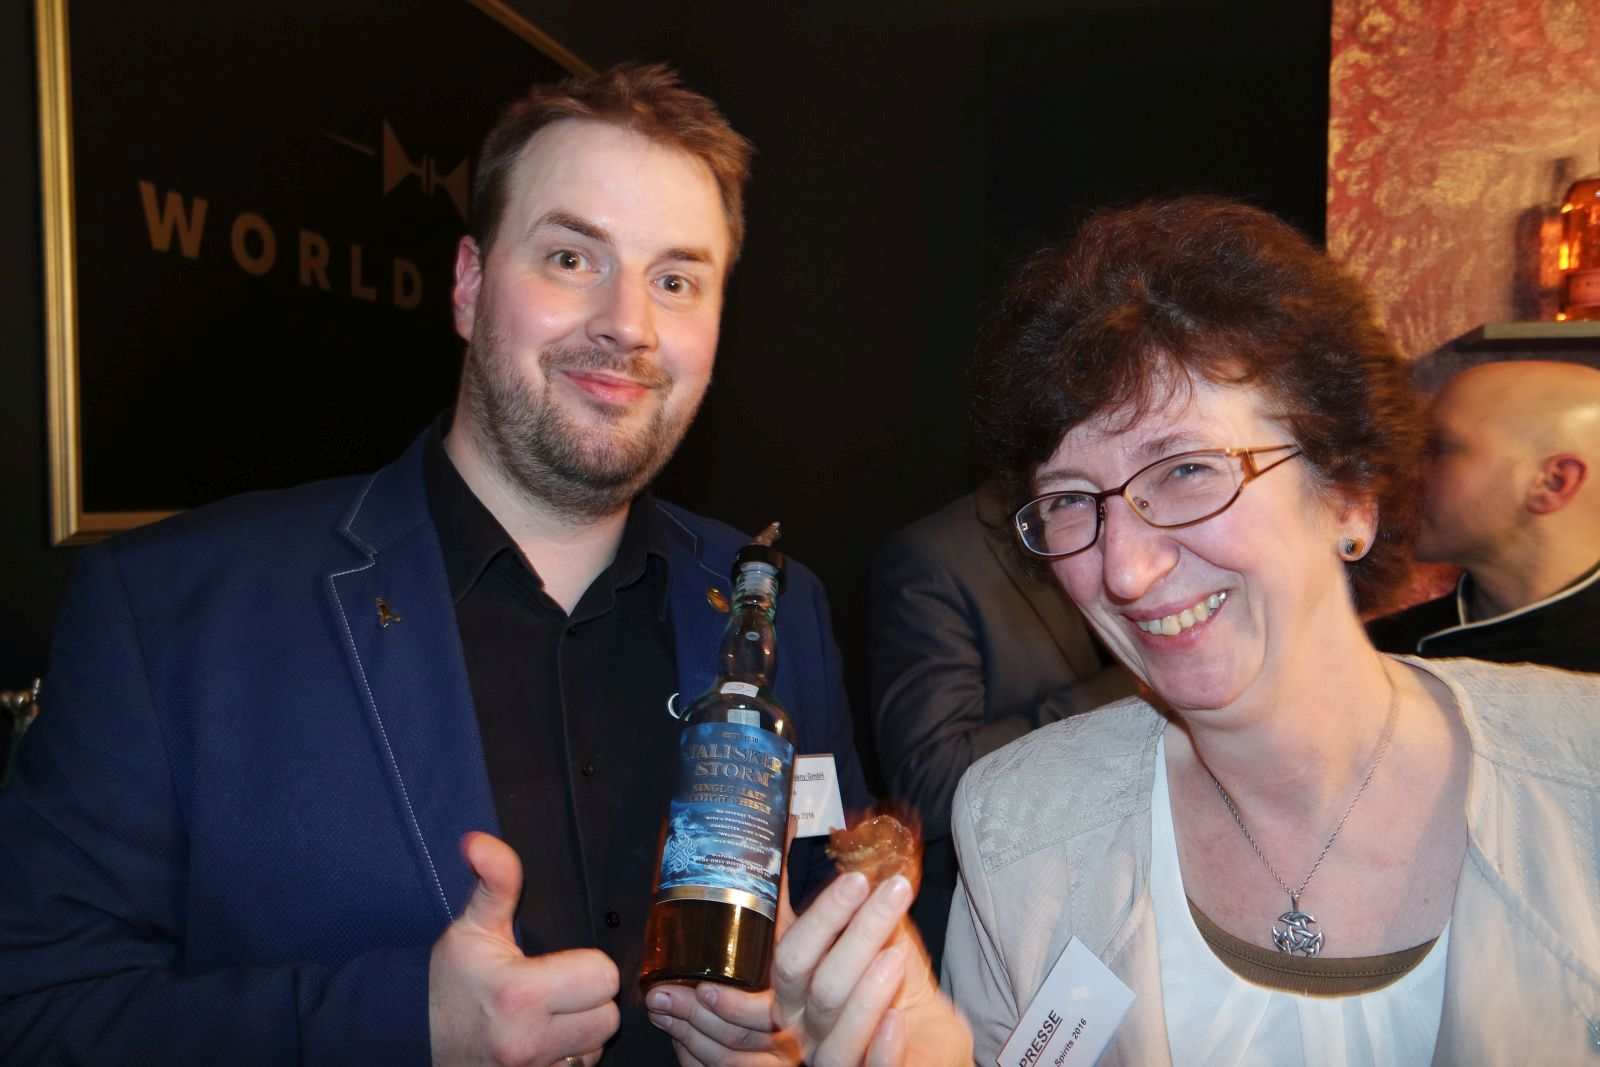 Thomas Plaue und Petra Milde bei der Durchführung eines Experimentes für Whiskyexperts, über das wir noch berichten werden. :-)